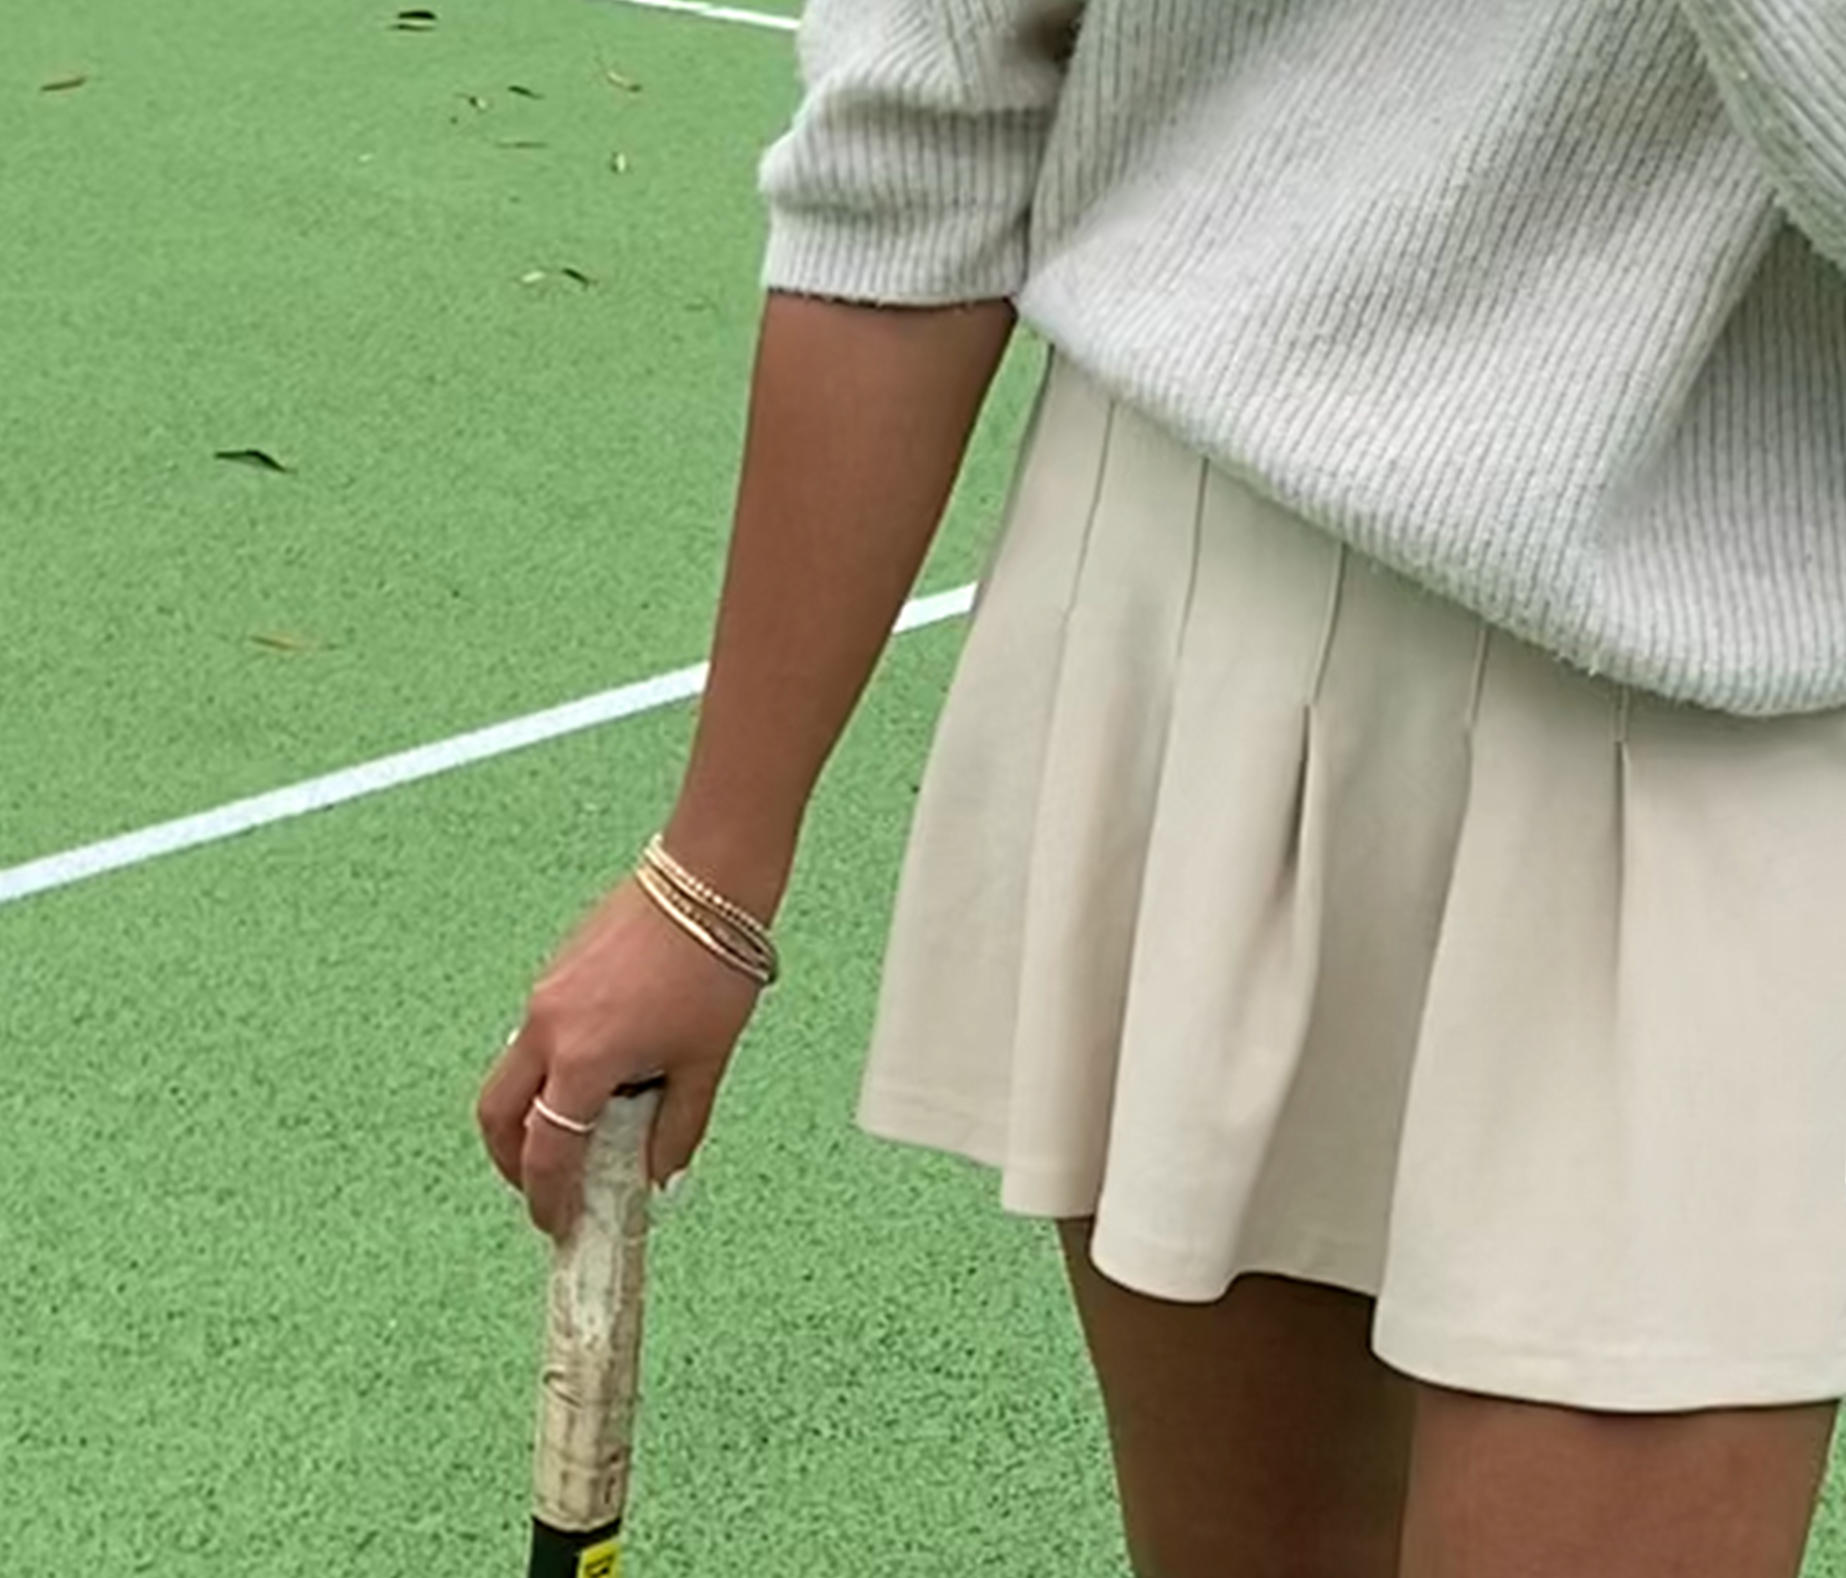 tennis player wearing tennis bracelet